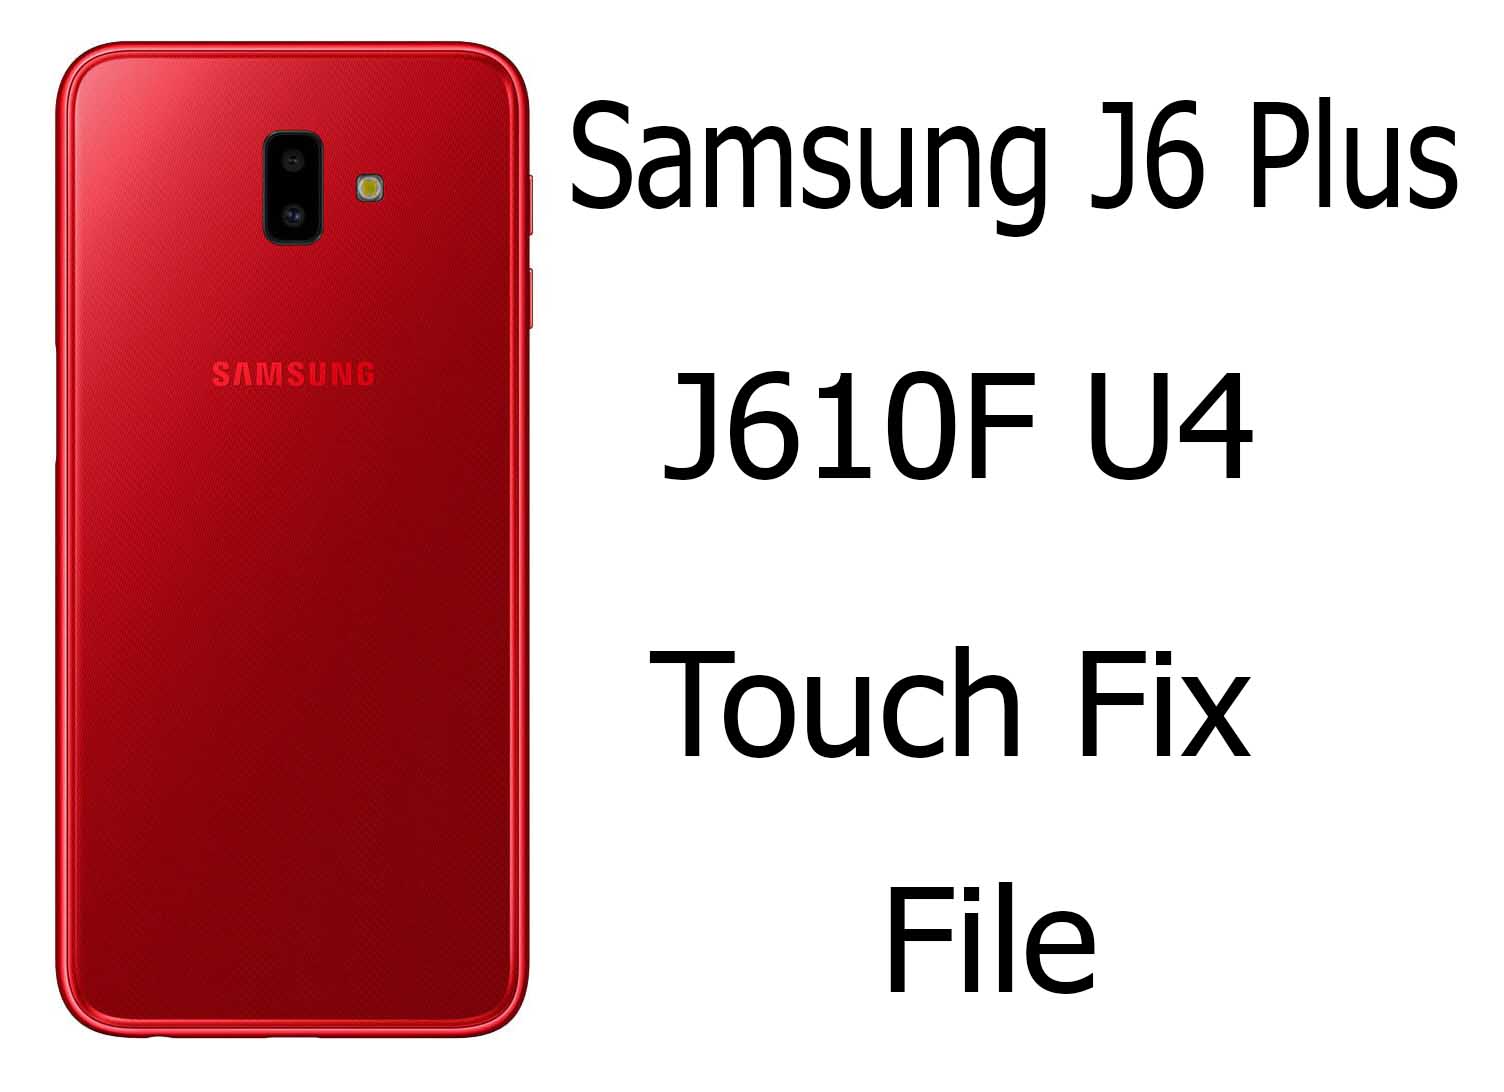 Samsung J6 Plus J610F U4 Touch Fix File Free